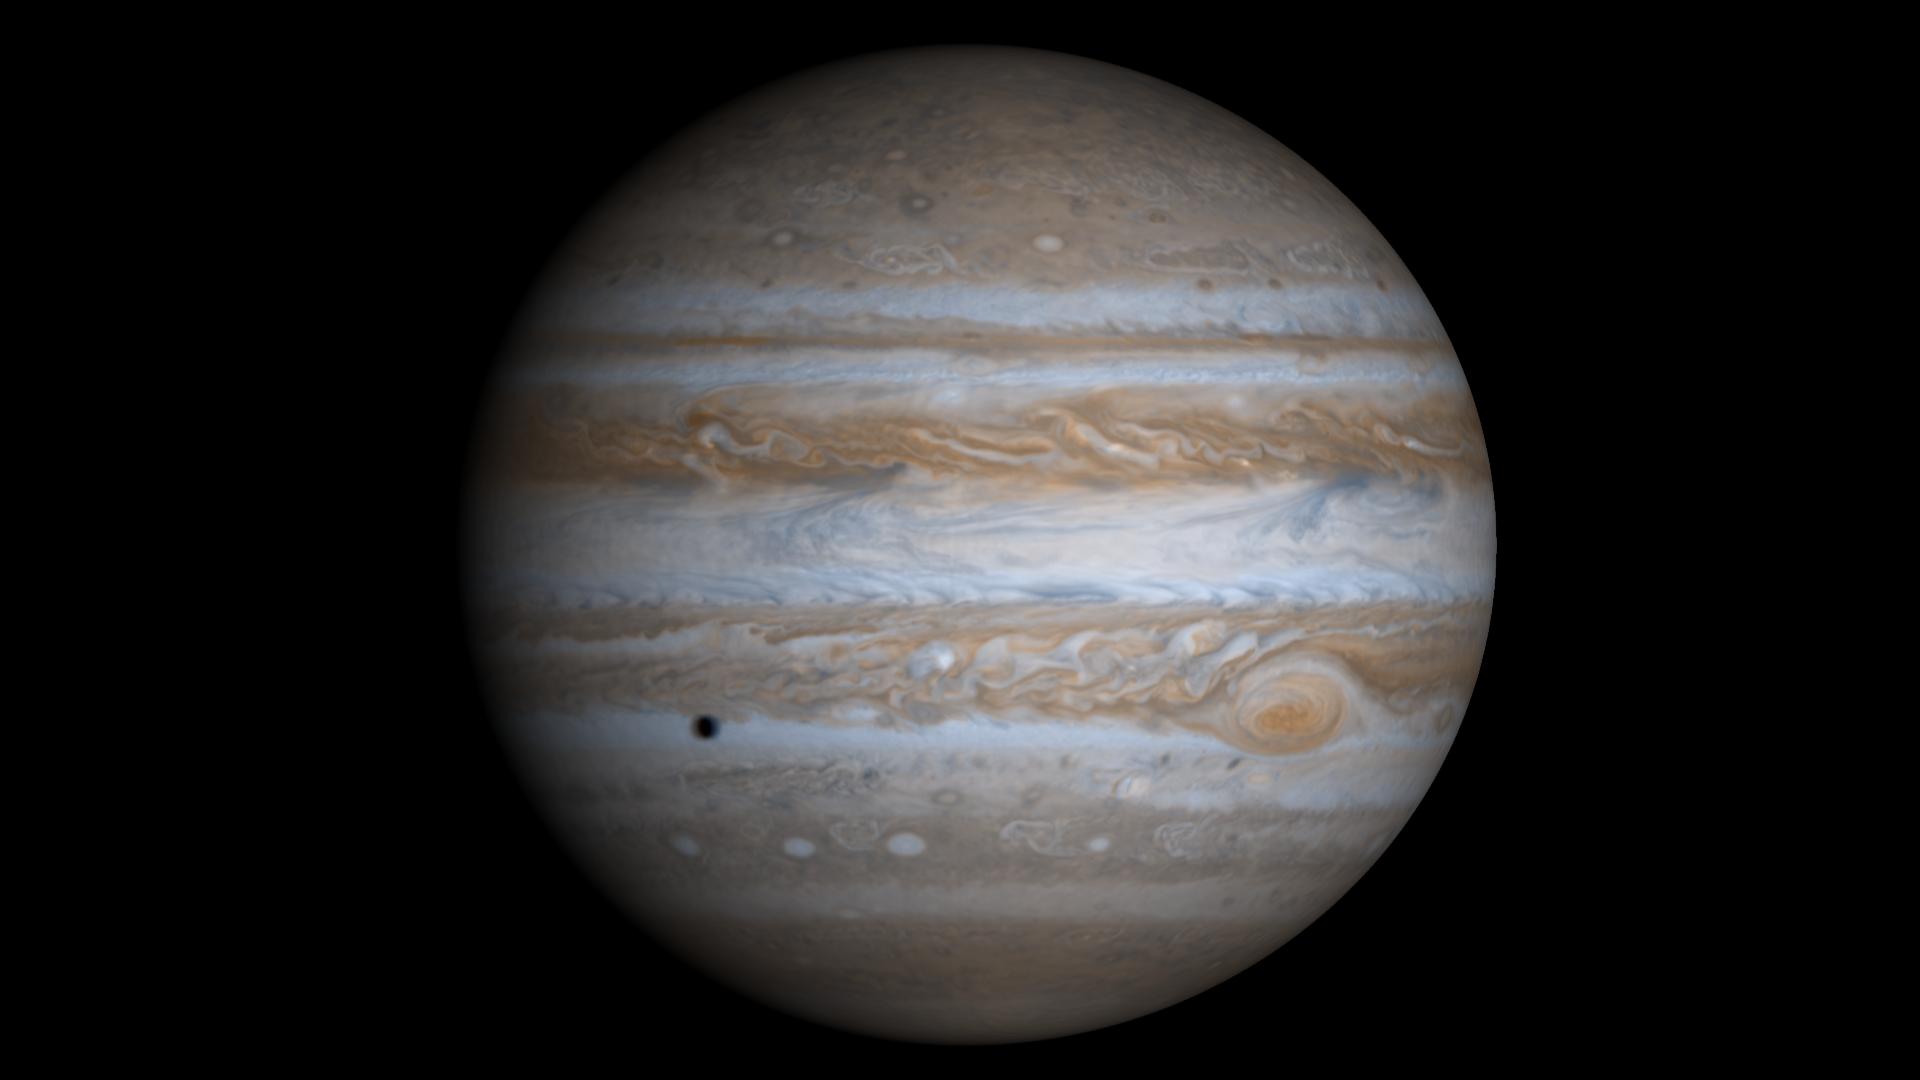 High Resolution Globe of Jupiter NASA Solar System Exploration